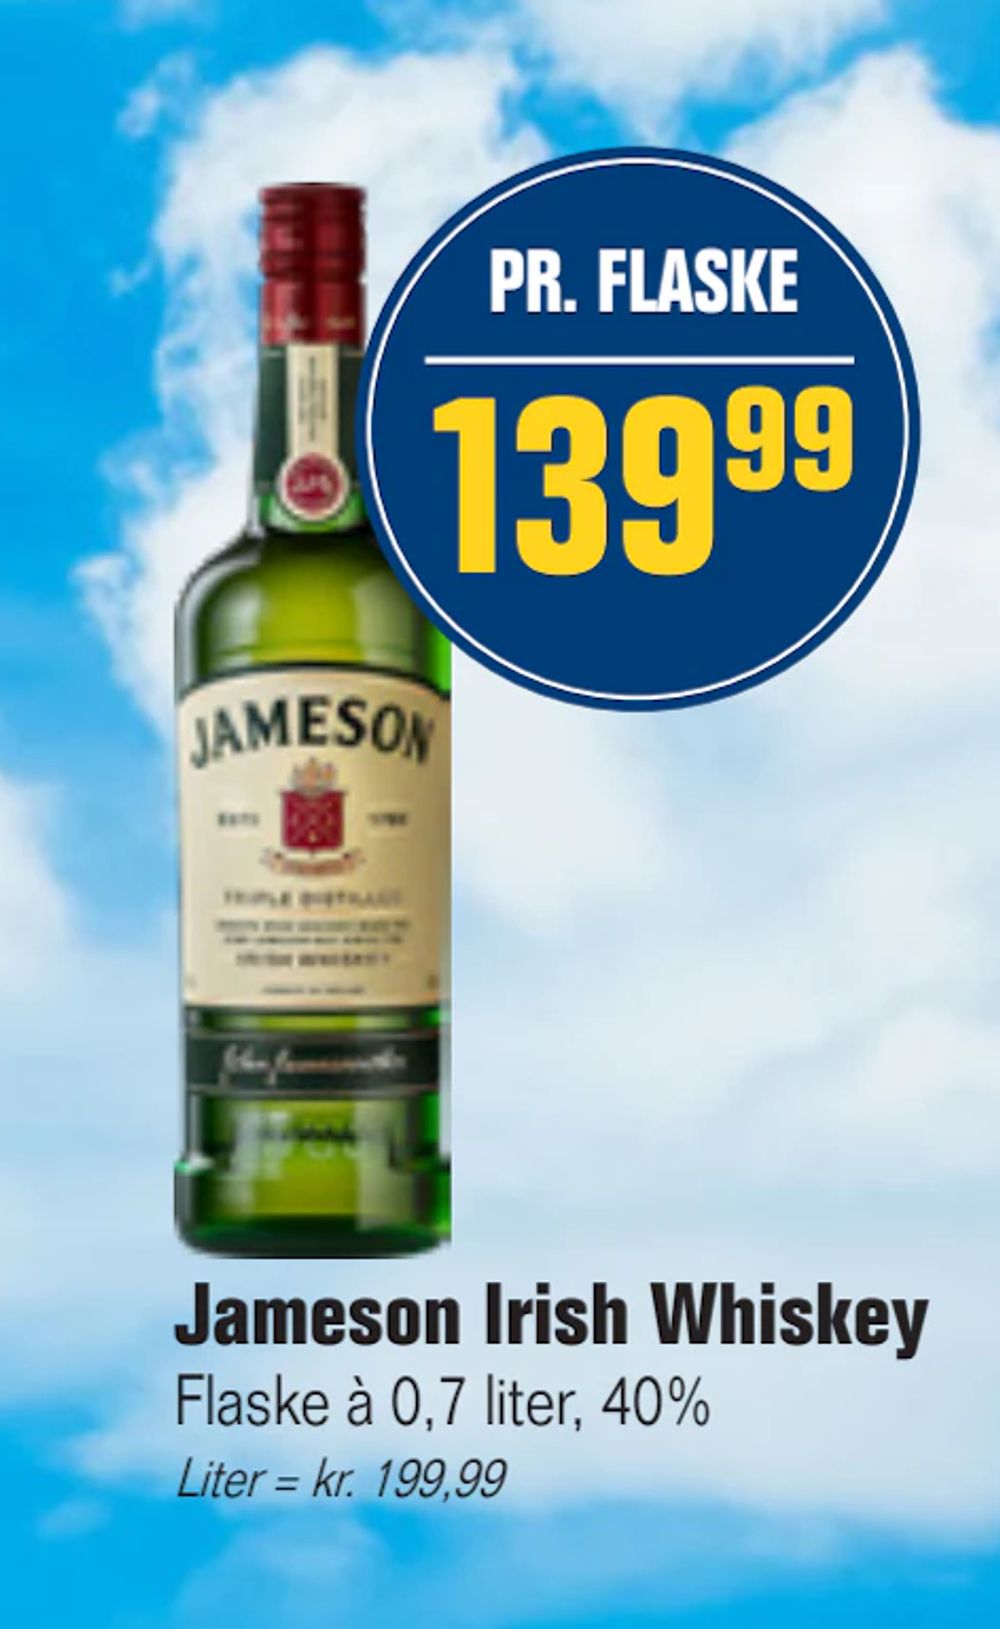 Tilbud på Jameson Irish Whiskey fra Otto Duborg til 139,99 kr.